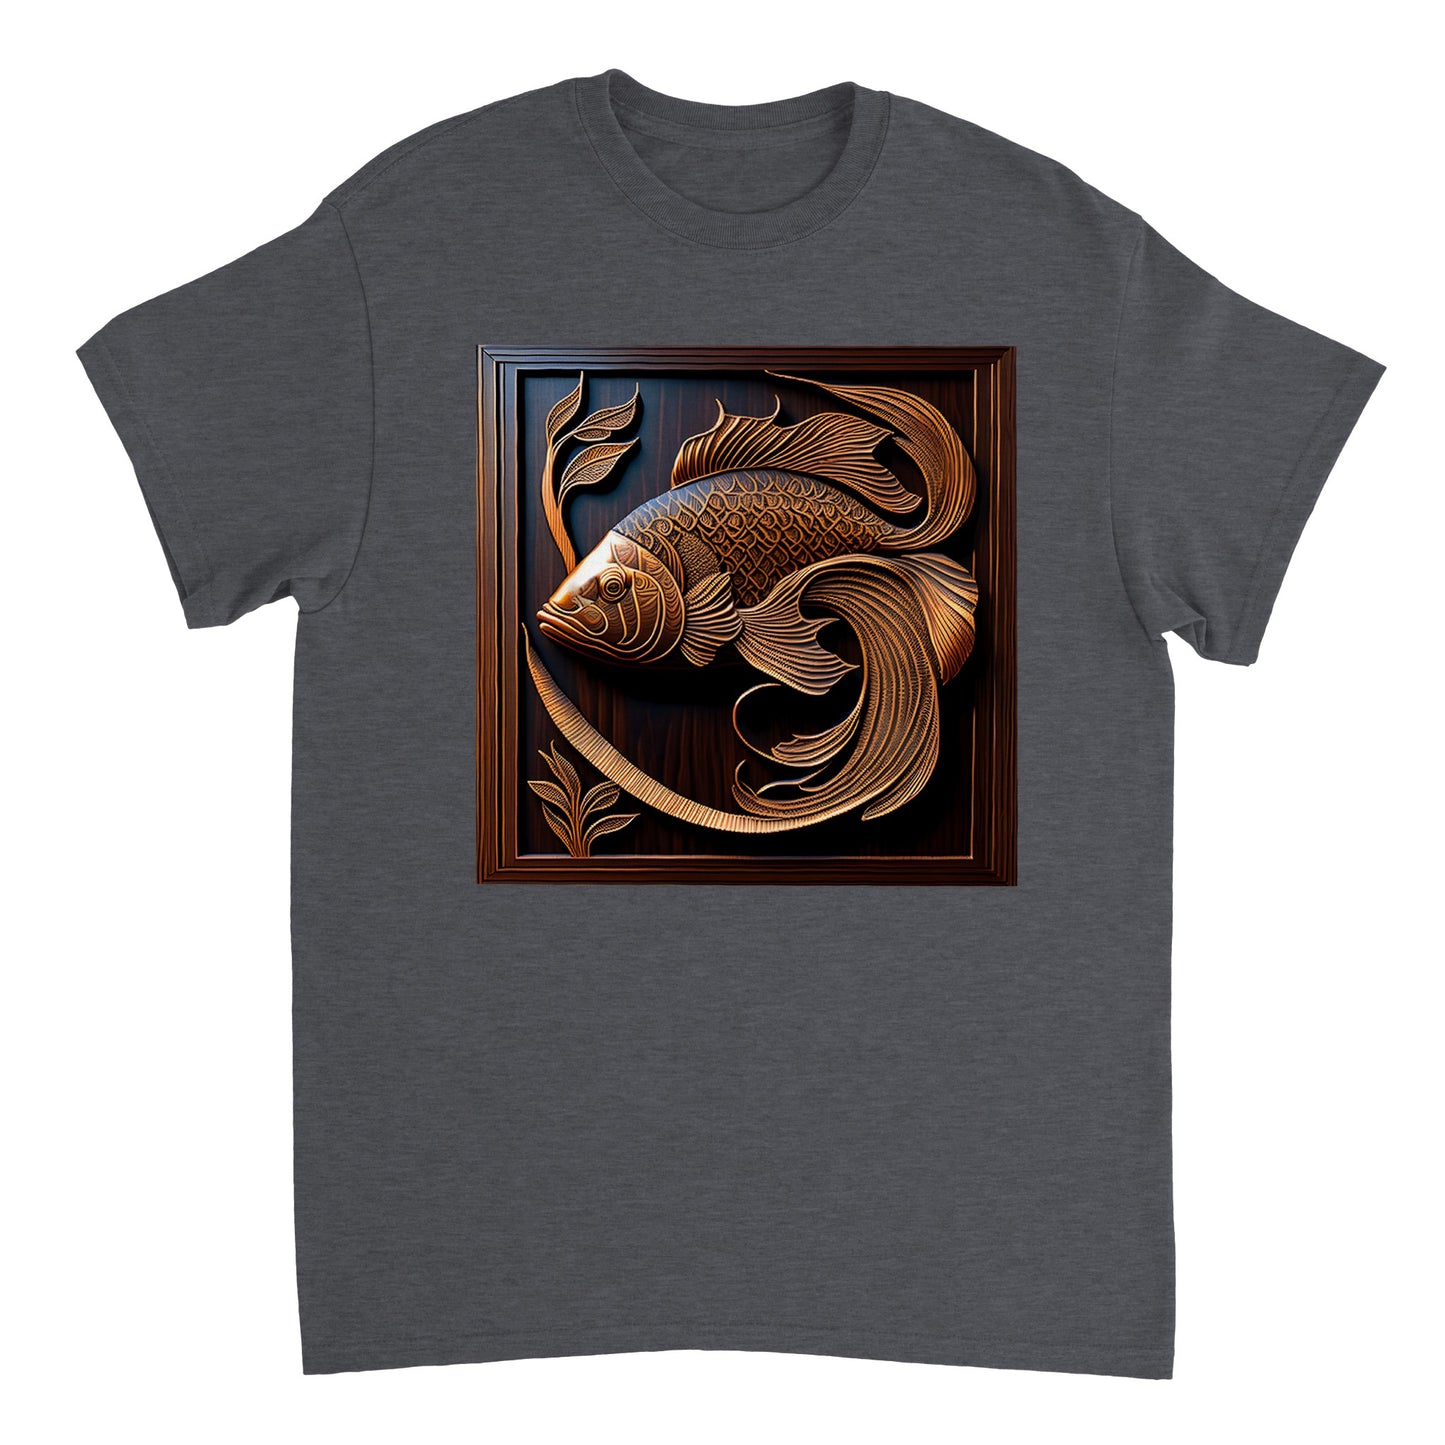 3D Wooden Animal Art - Heavyweight Unisex Crewneck T-shirt 61